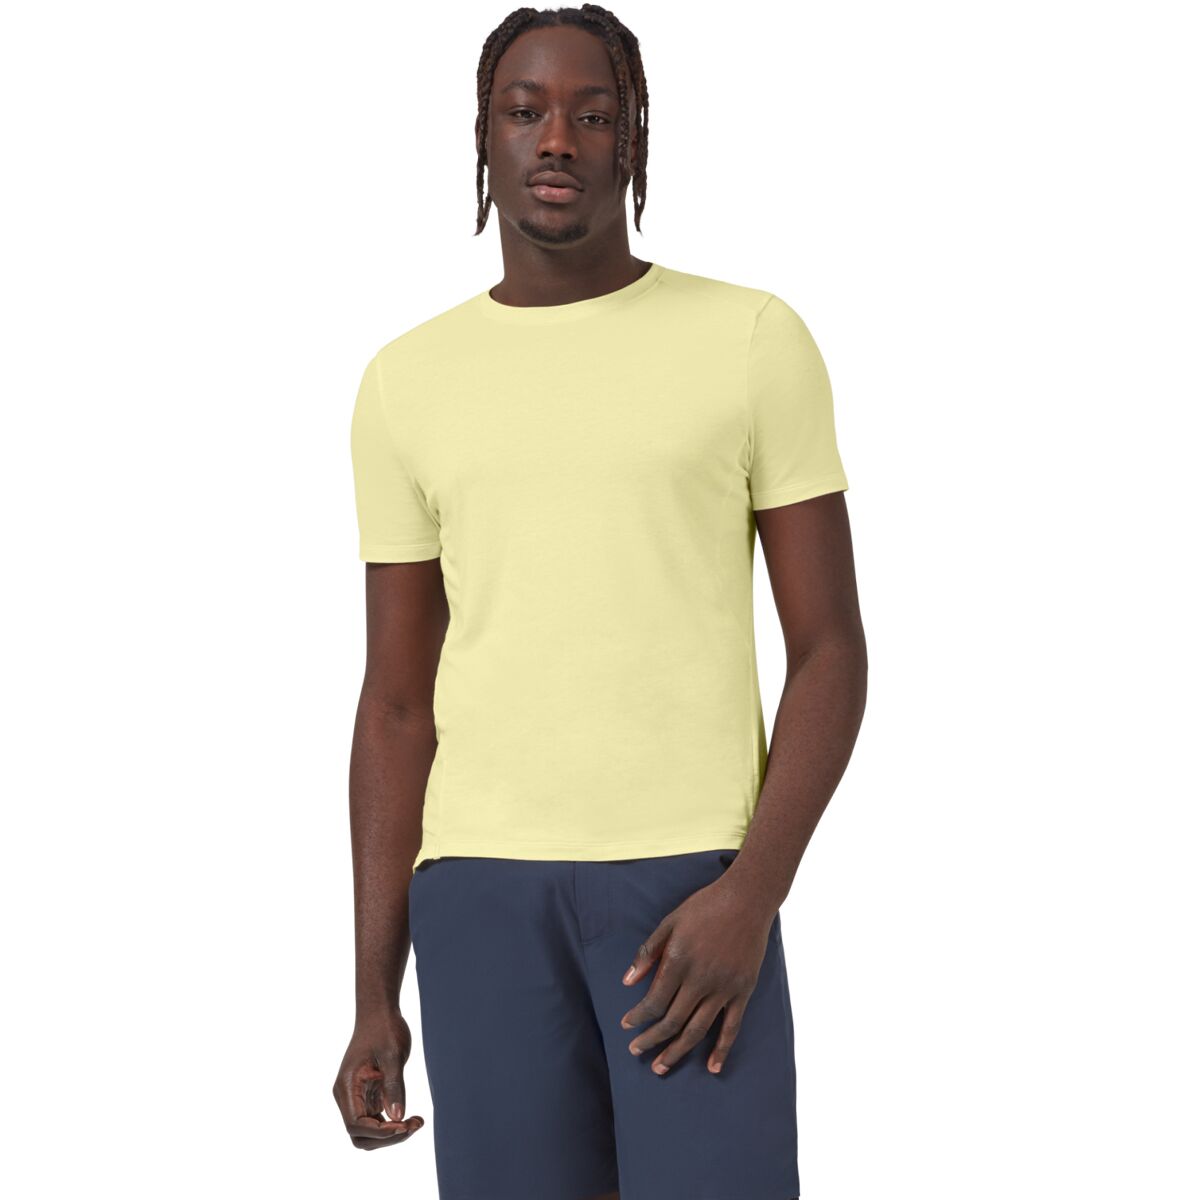 Active Short-Sleeve T-Shirt - Men